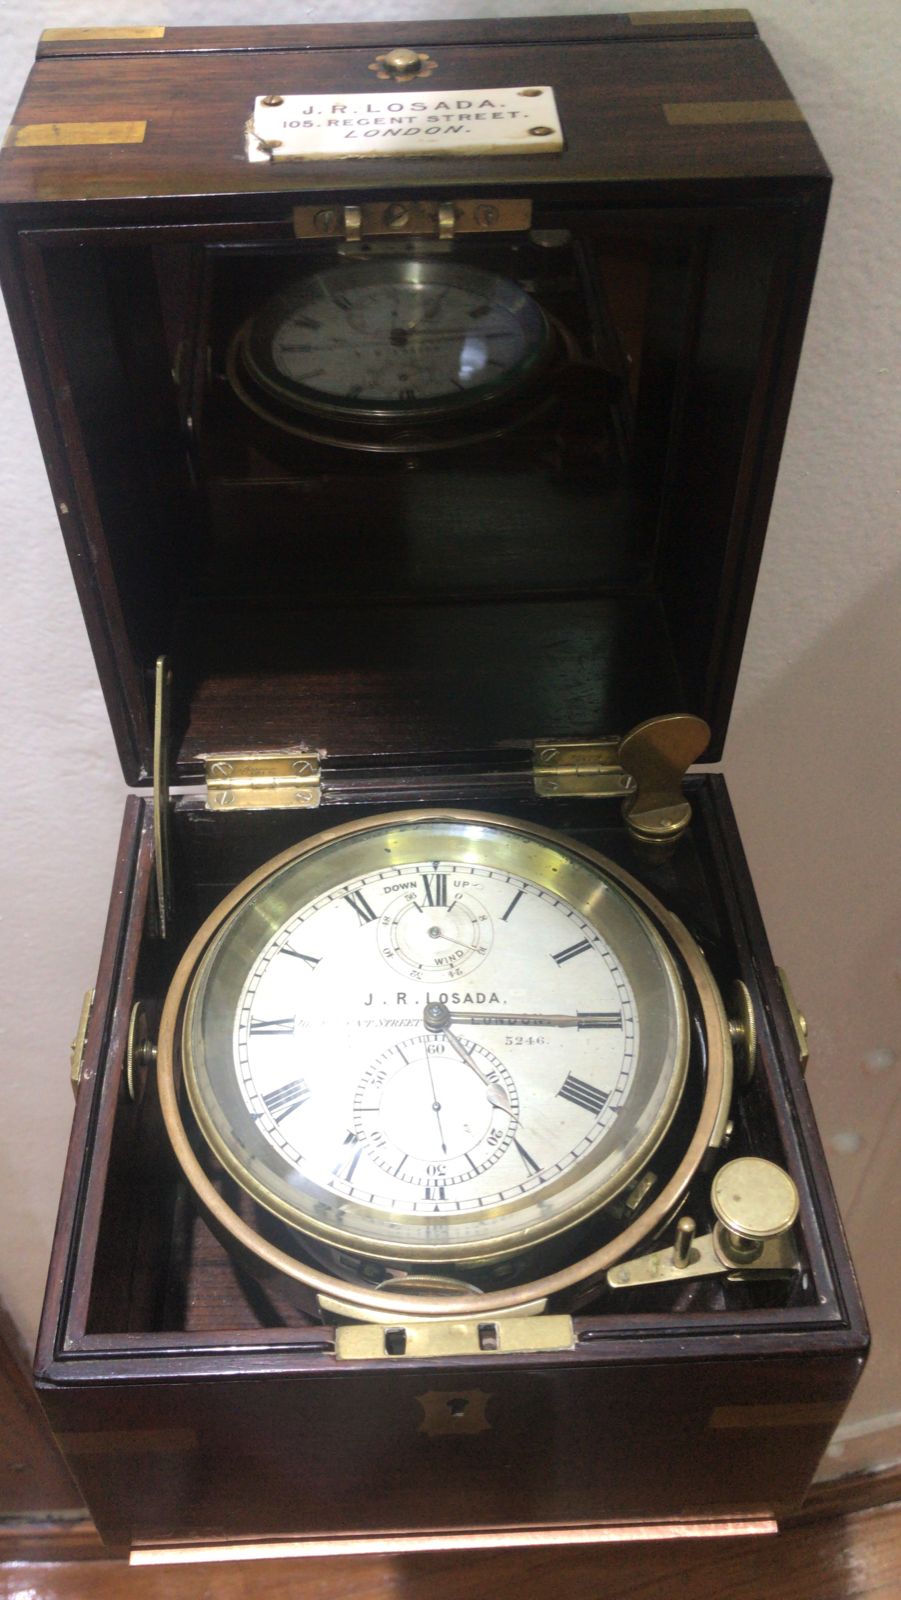 Cronómetro que pertenecía a la Fragata Sarmiento. Fue entrego al buque en su primer viaje inaugural.